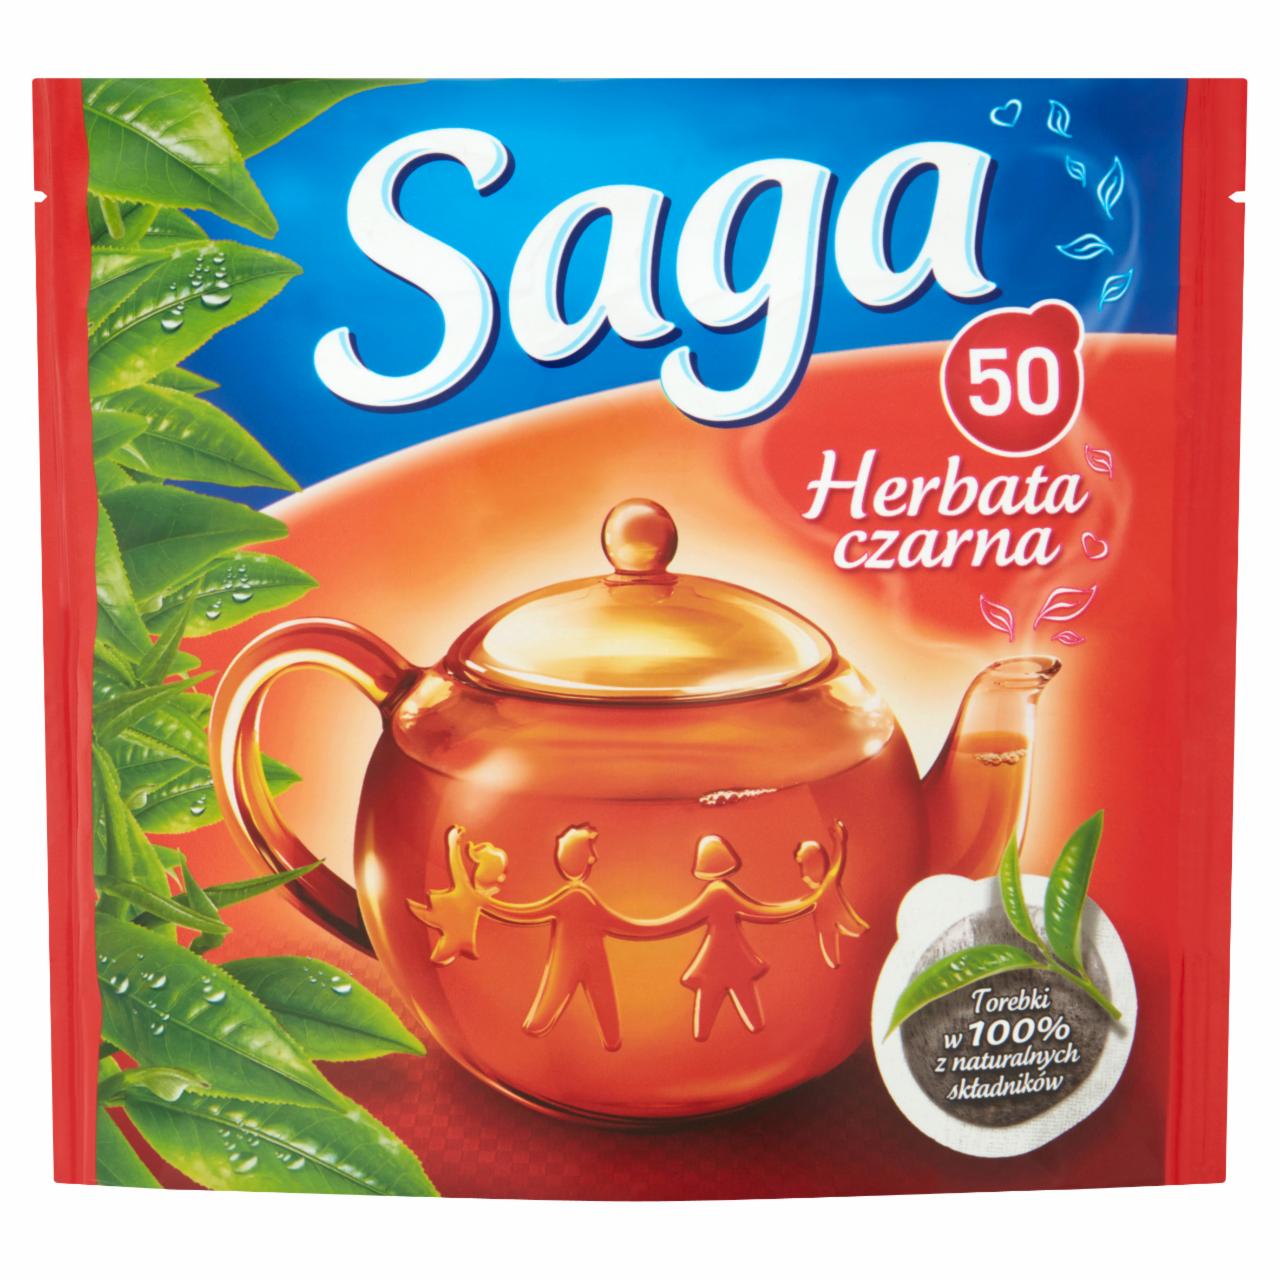 Zdjęcia - Saga Herbata czarna 70 g (50 torebek)